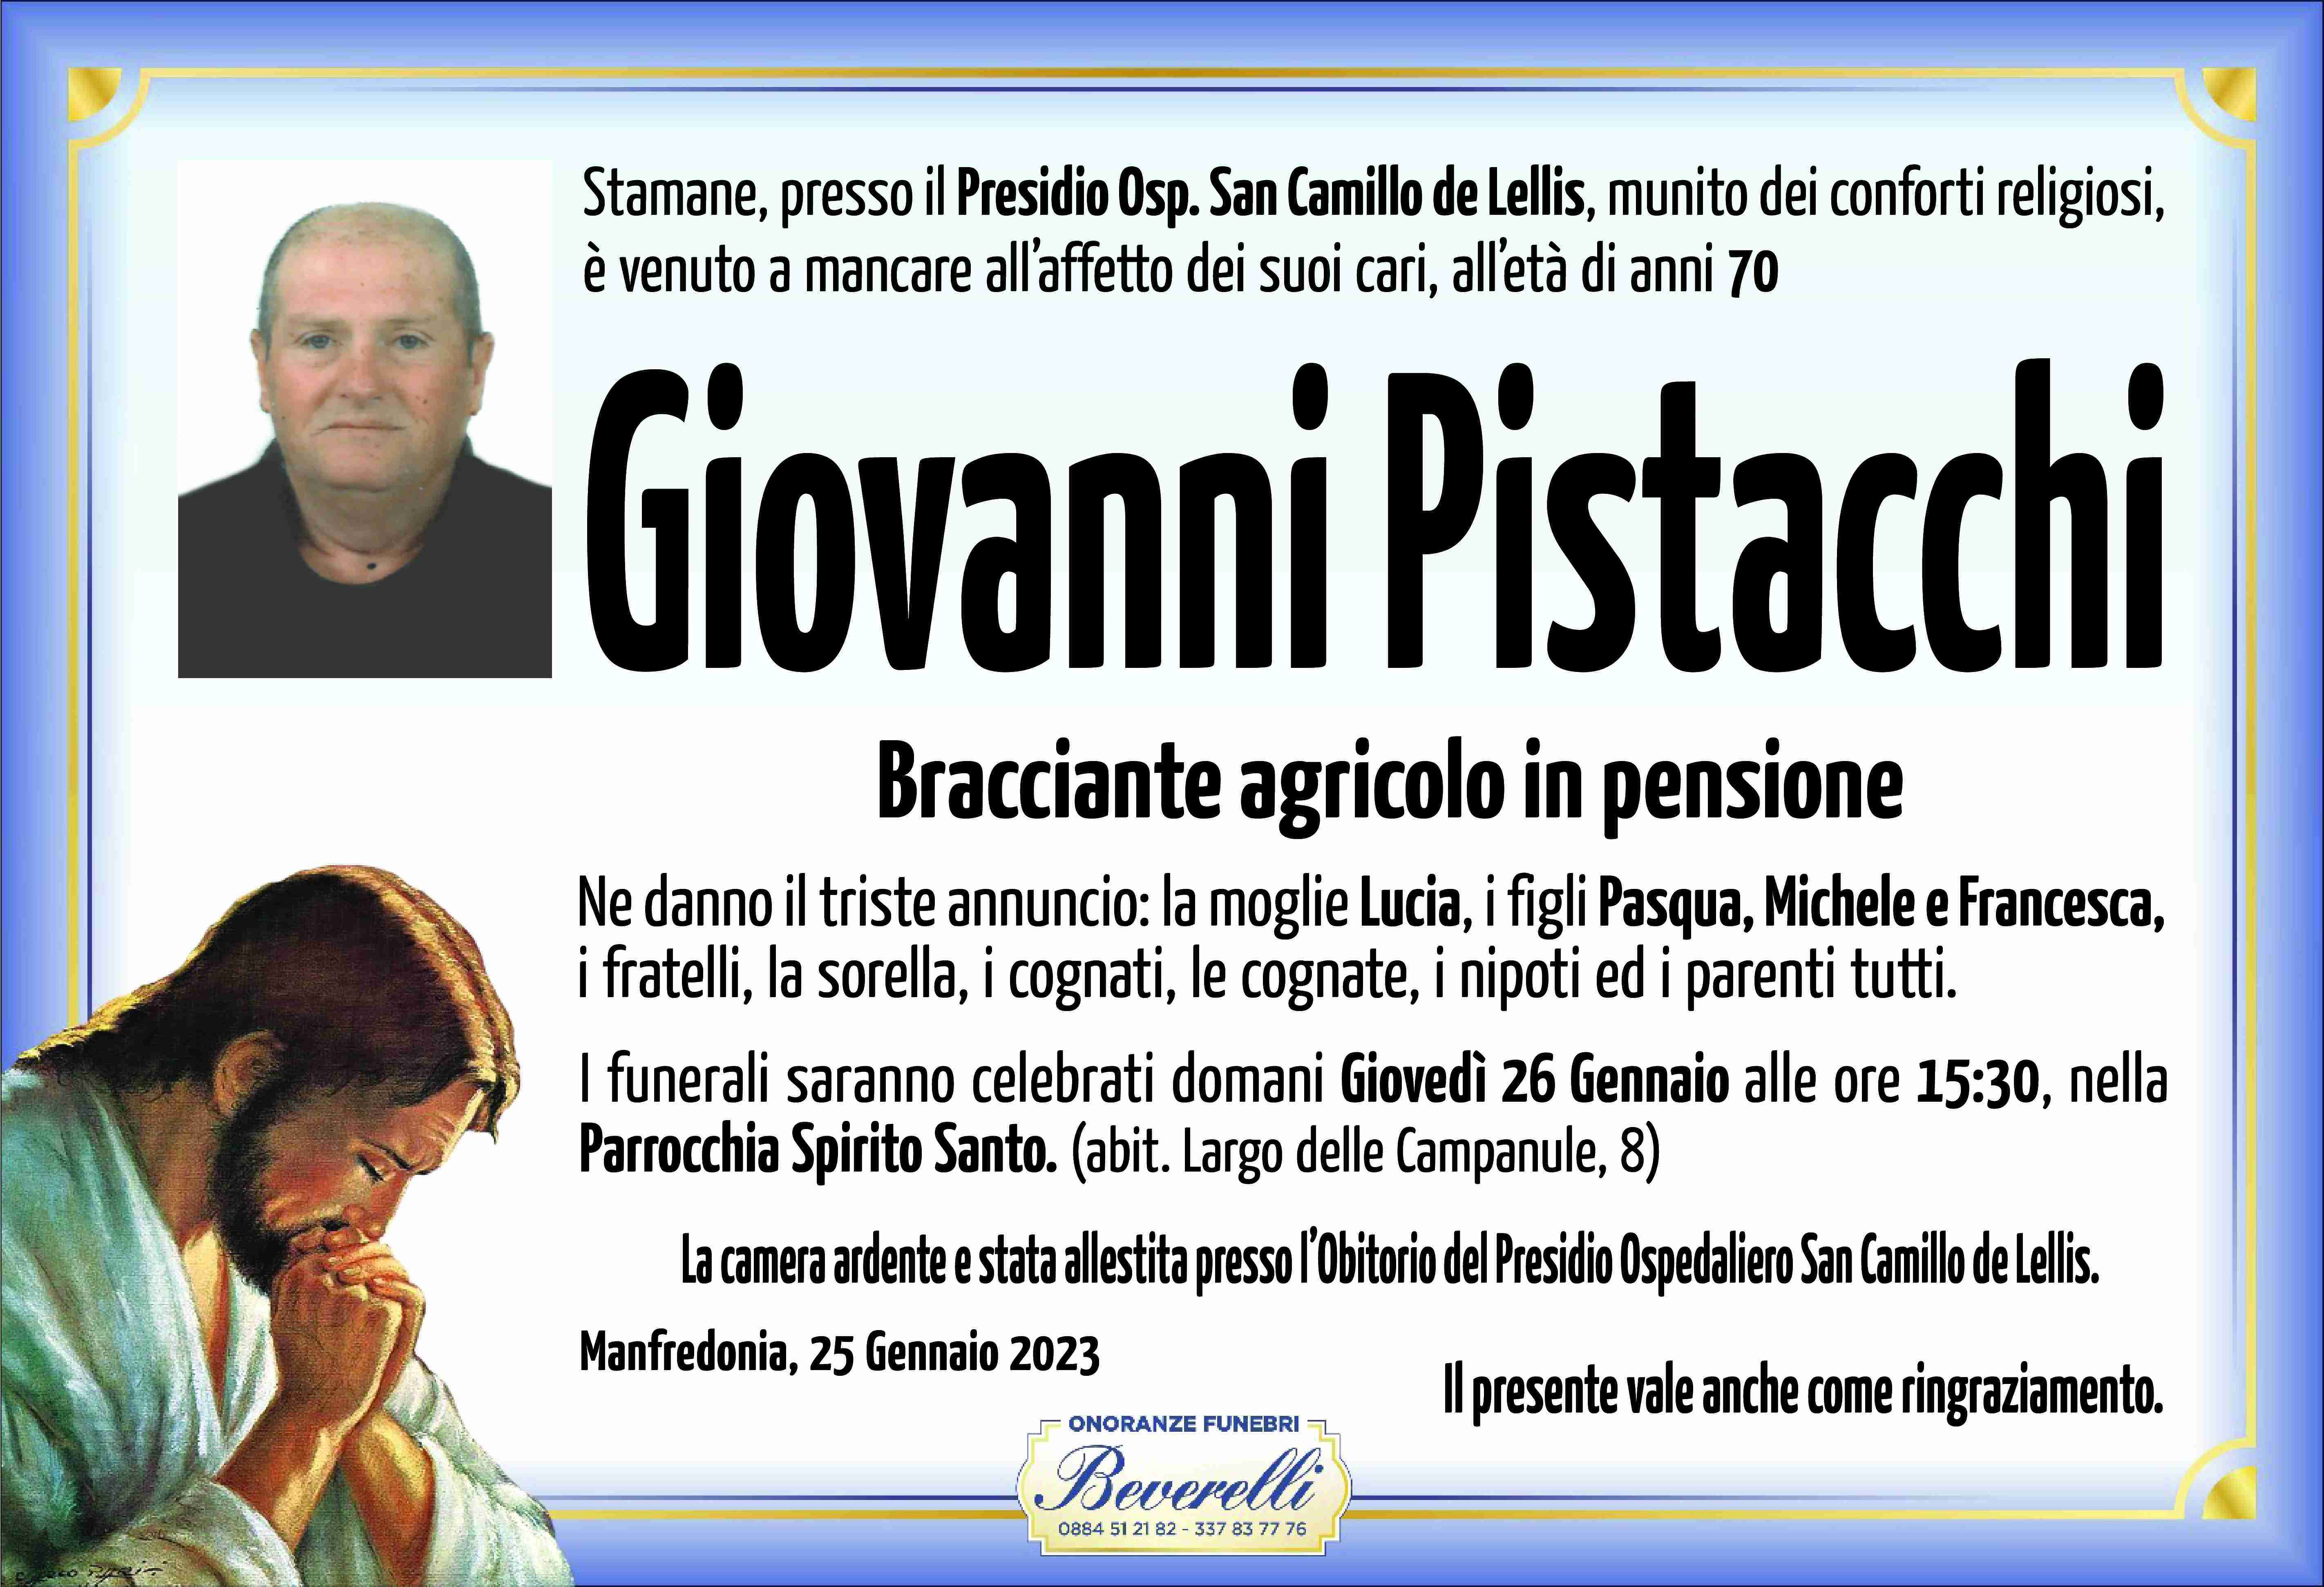 Giovanni Pistacchi